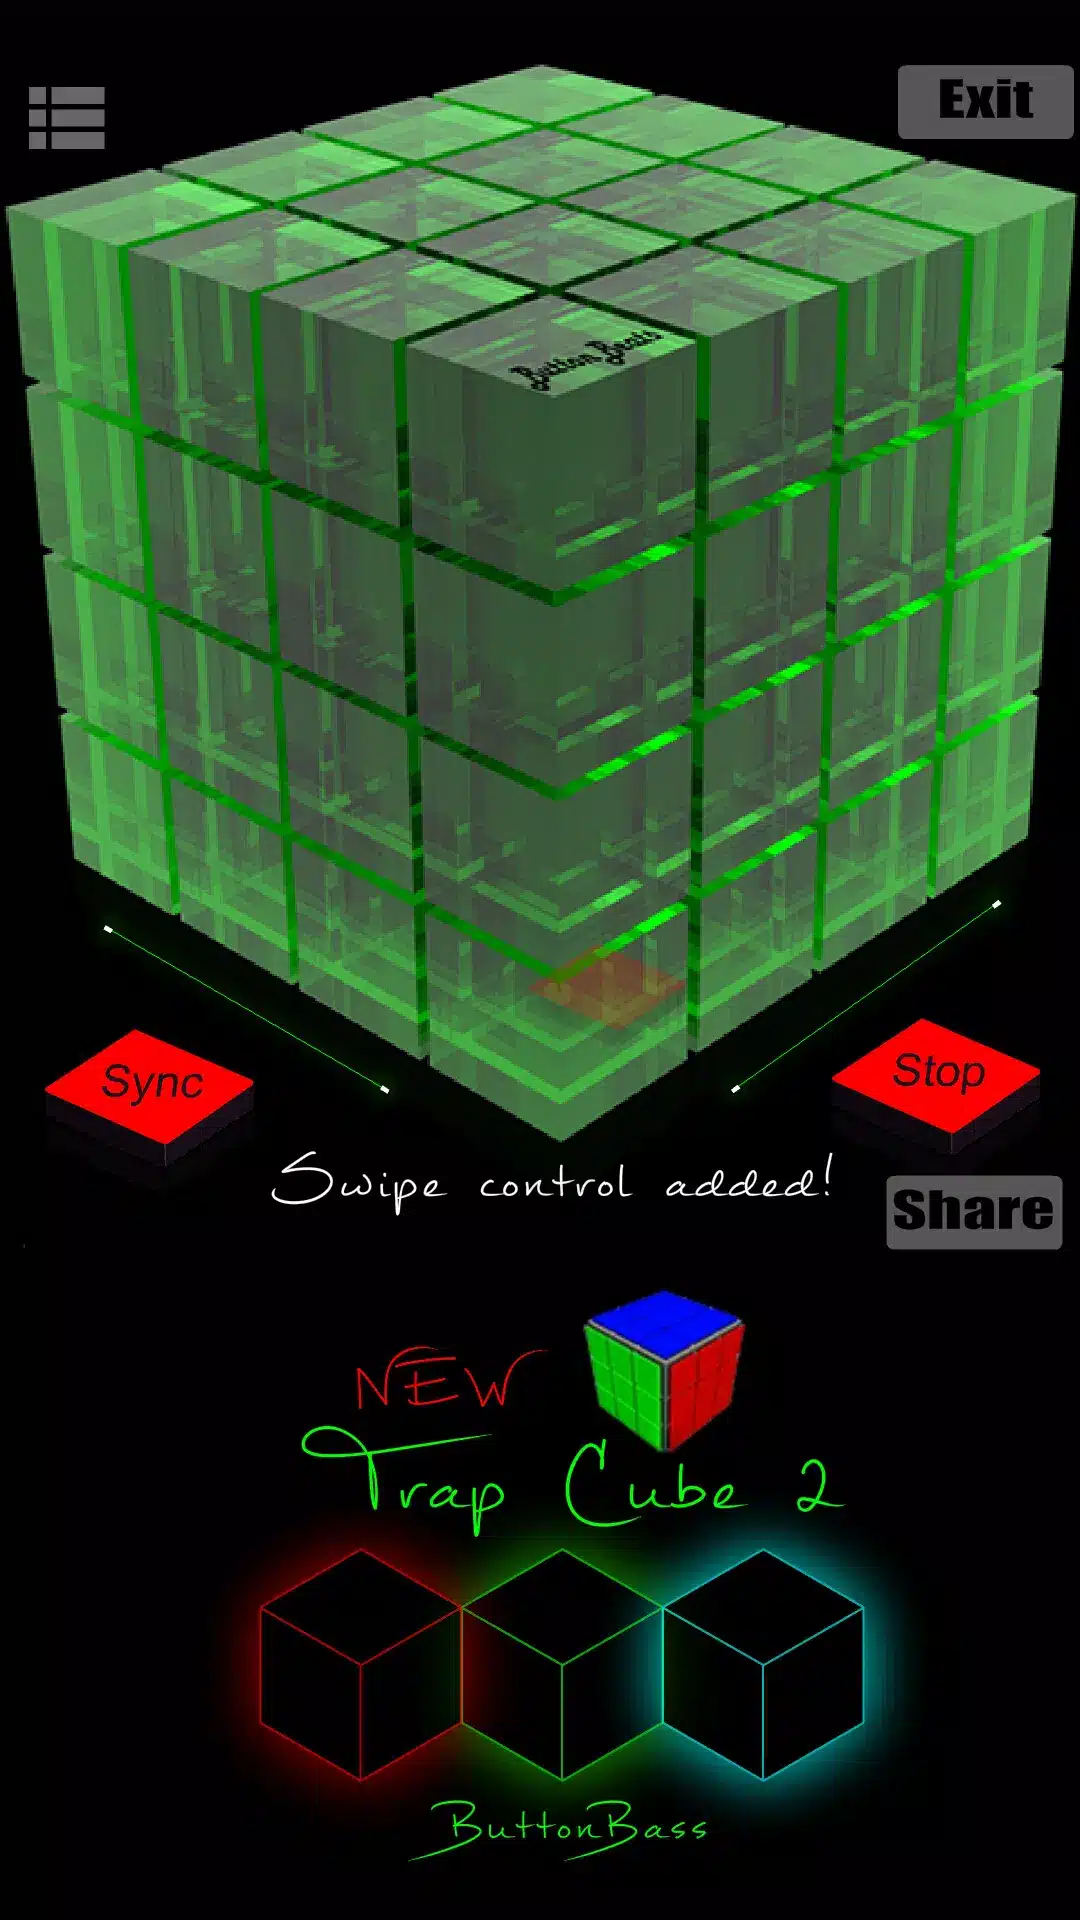 ButtonBass Dubstep Cube Image 2